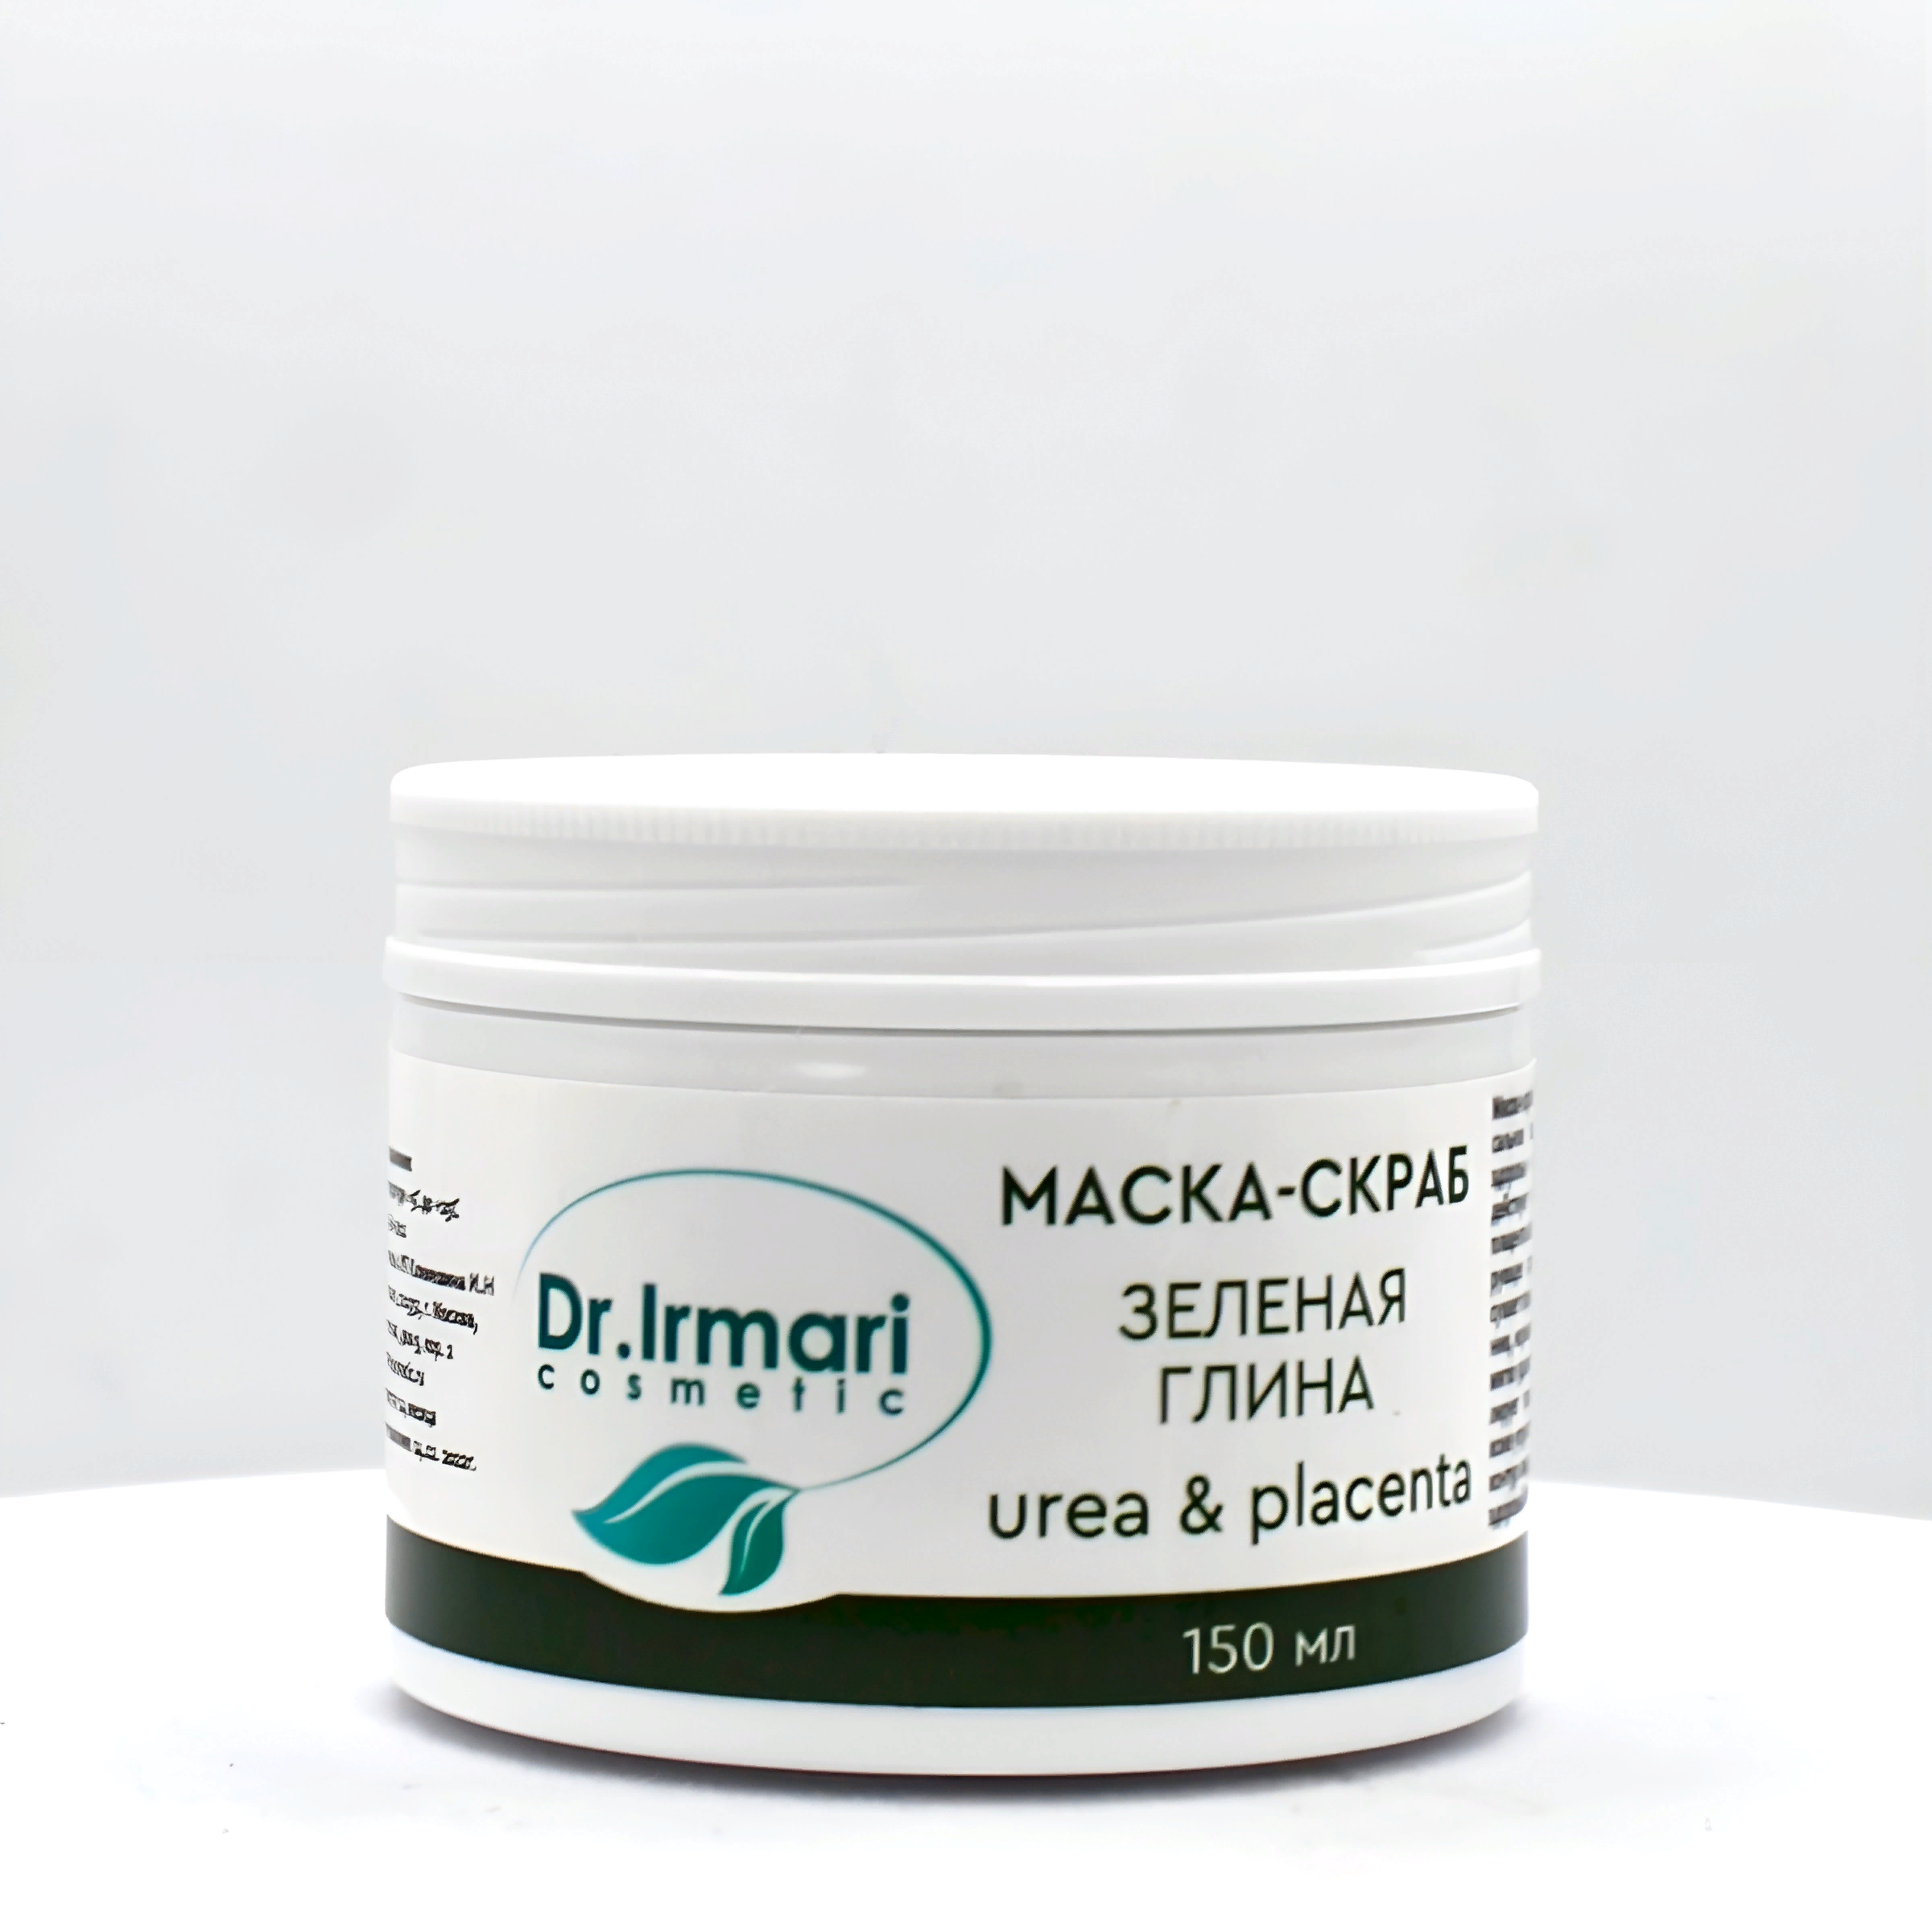 Маска-скраб Dr.Irmari cosmetic Urea & Placenta Зелёная глина 150 мл либридерм серацин маска себорегулирующая с белой и зеленой глиной 75мл